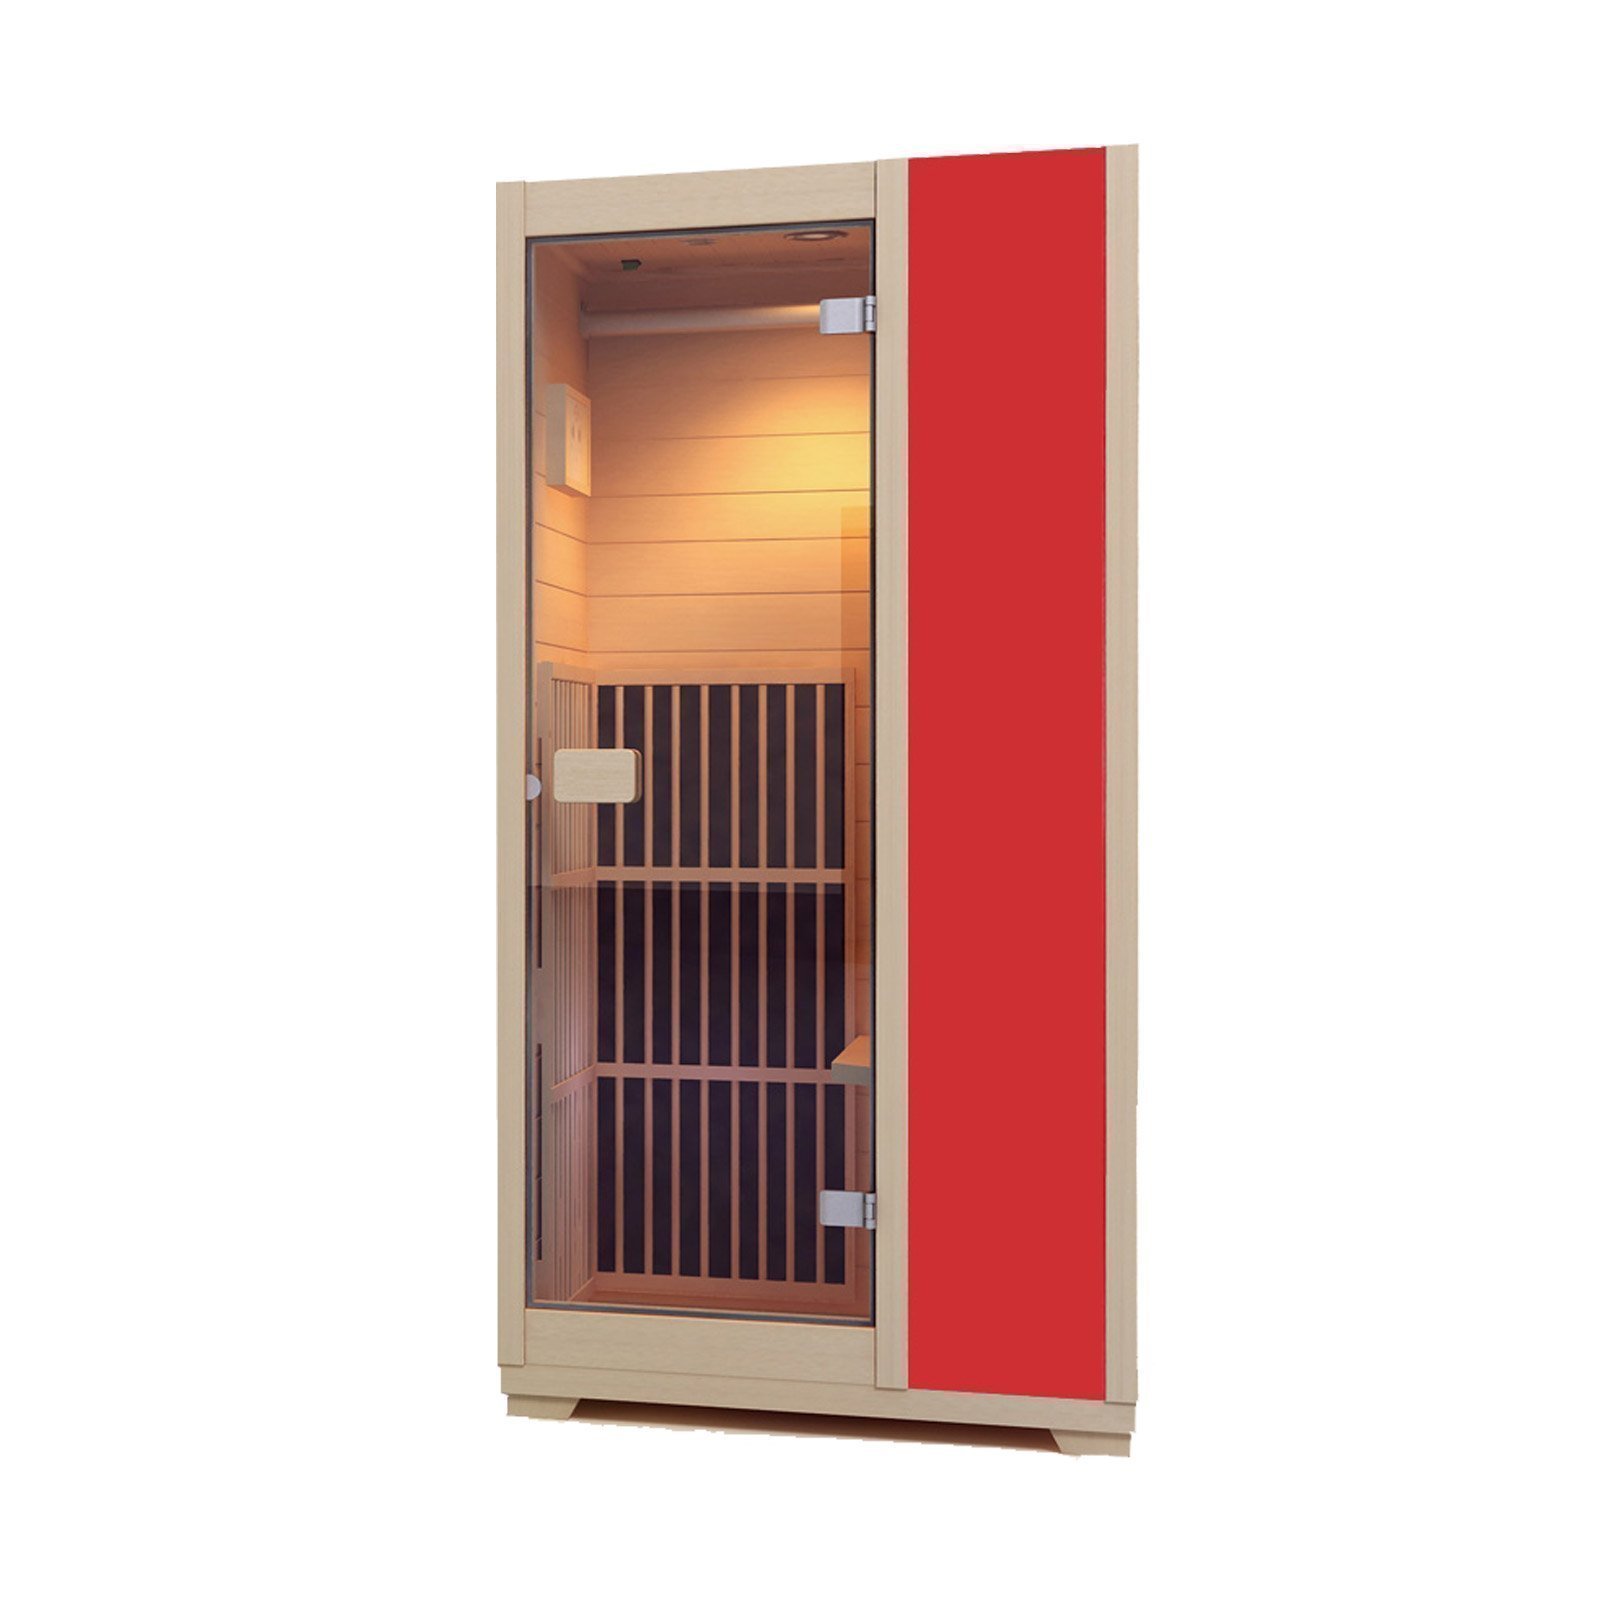 Single person infrared vitality sauna